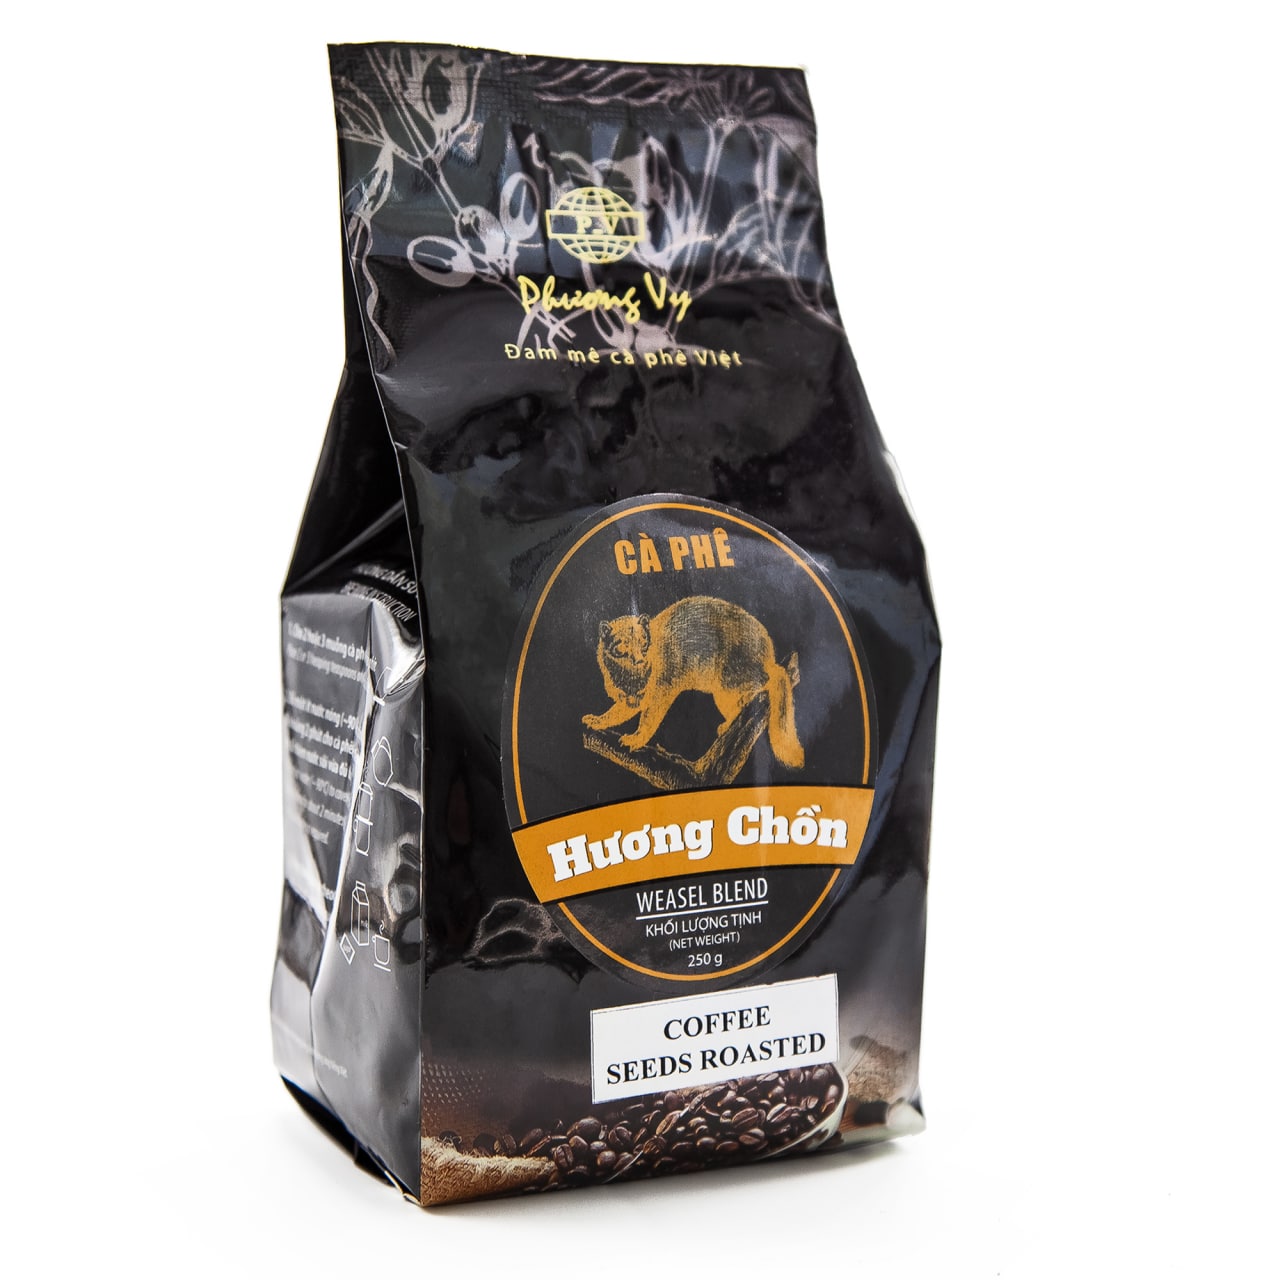 Кофе вьетнамский в зернах Phuong Vy Weasel Blend ласка-чон 250 г